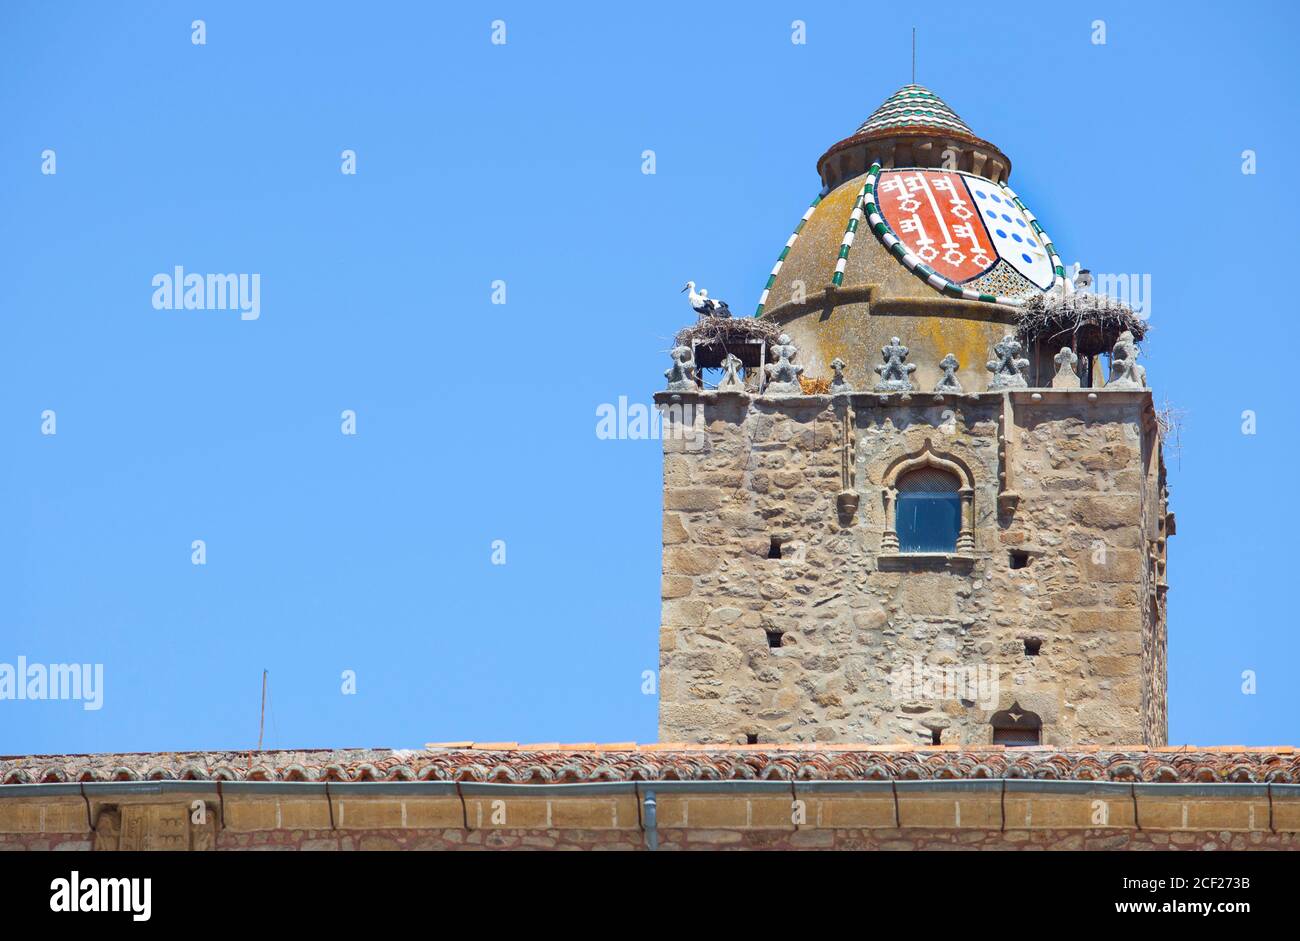 Alfiler Turm, ein gotischer Glockenturm aus dem 14. Jahrhundert, geschmückt mit verglasten Dachziegeln und beliebter Nistplatz für Störche, Trujillo, Spanien. Stockfoto